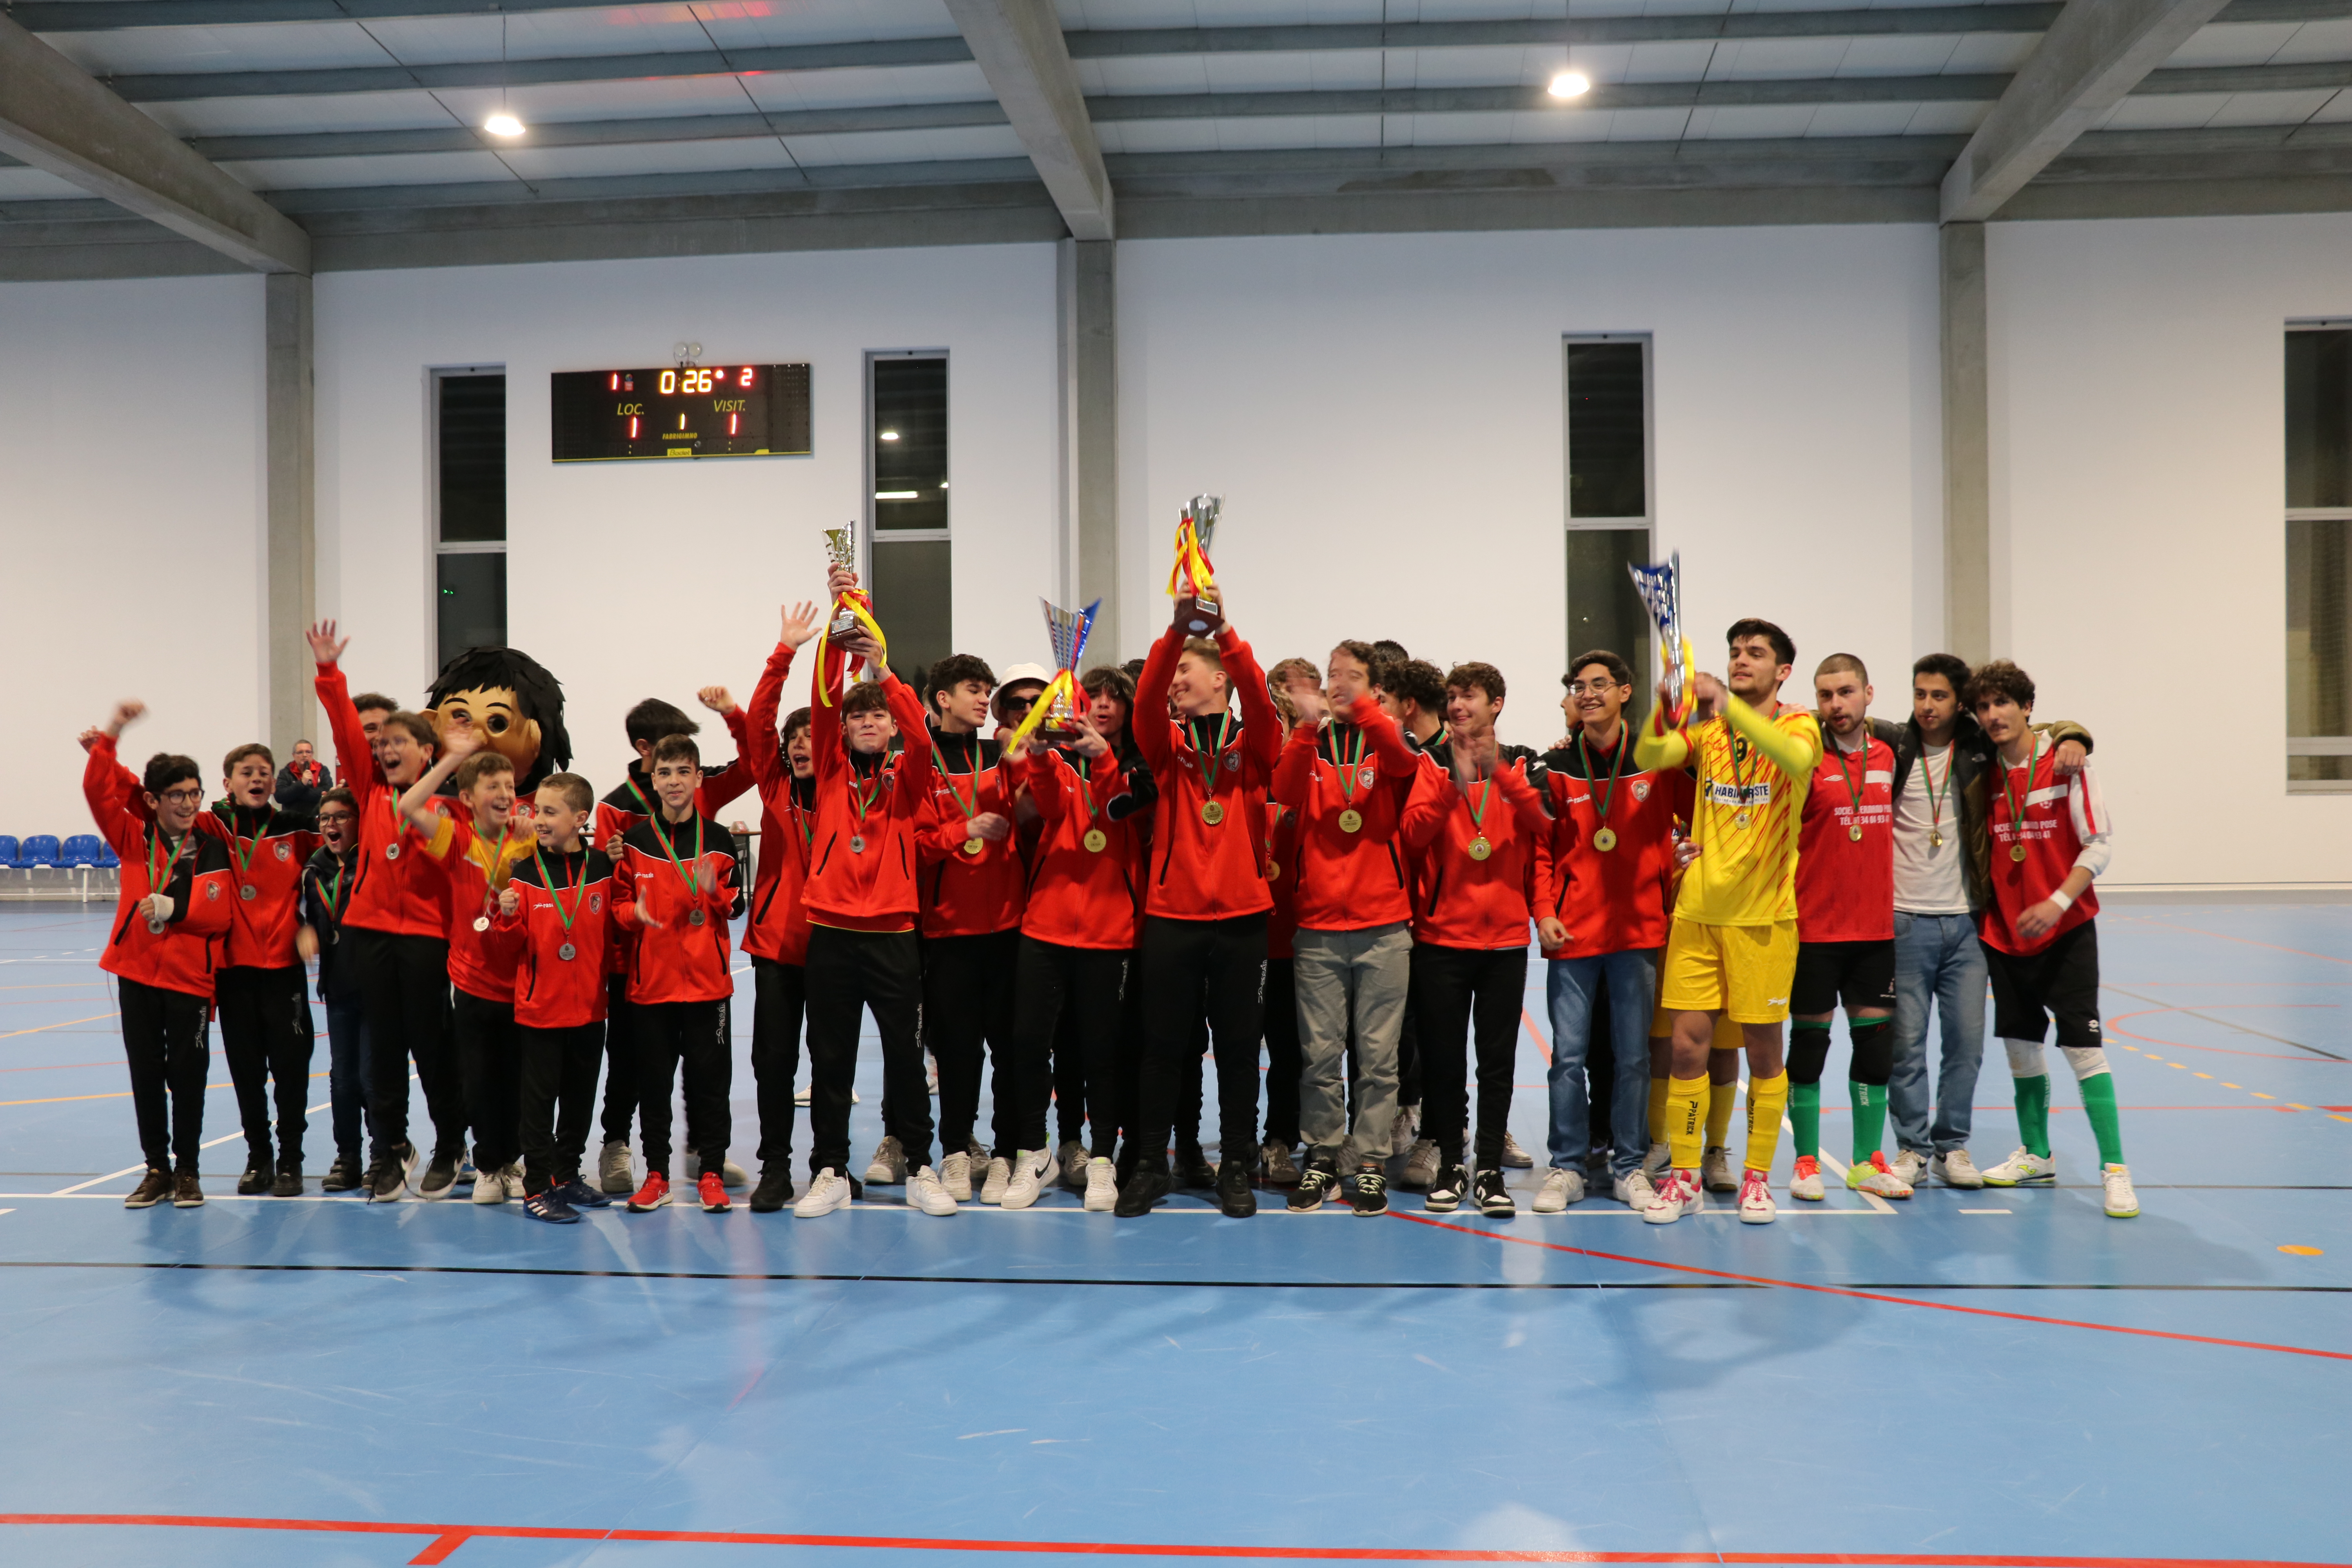 Entrega dos troféus de formação no Futsal